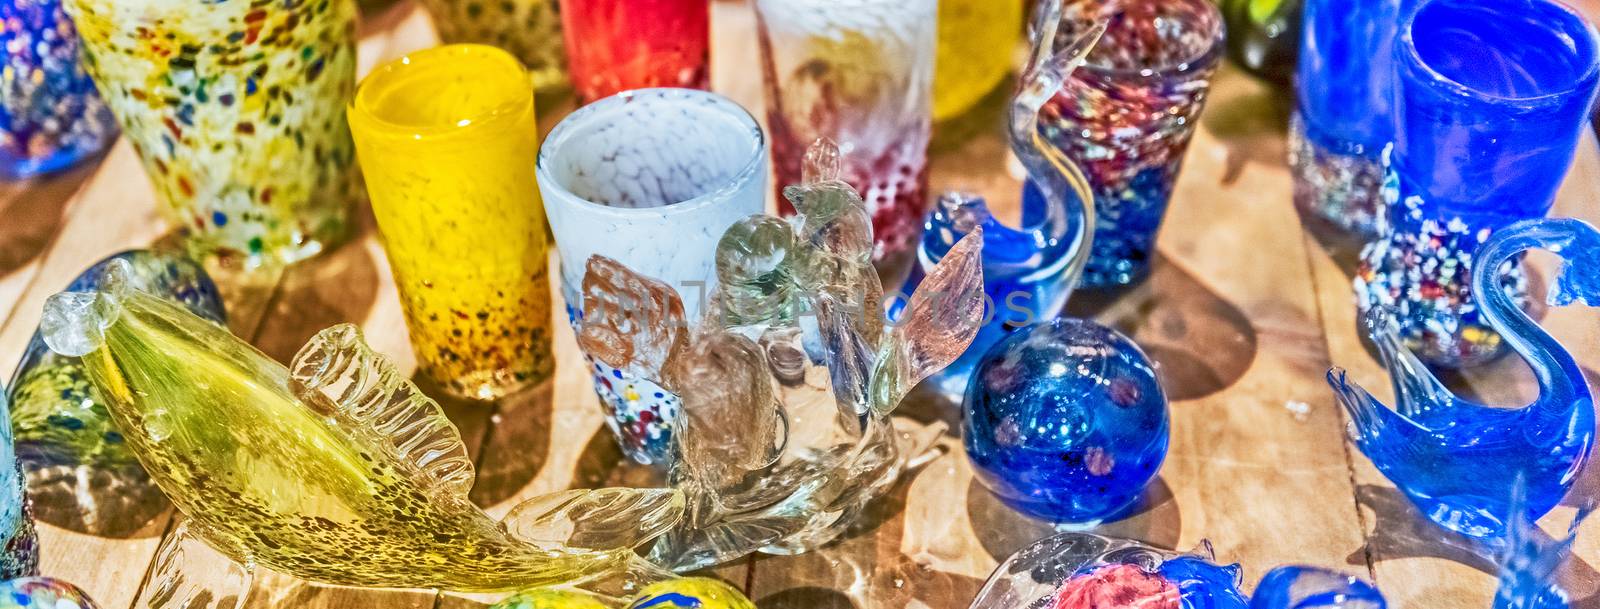 Traditional colorful murano glass goblets  for sale, Murano, Ven by marcorubino